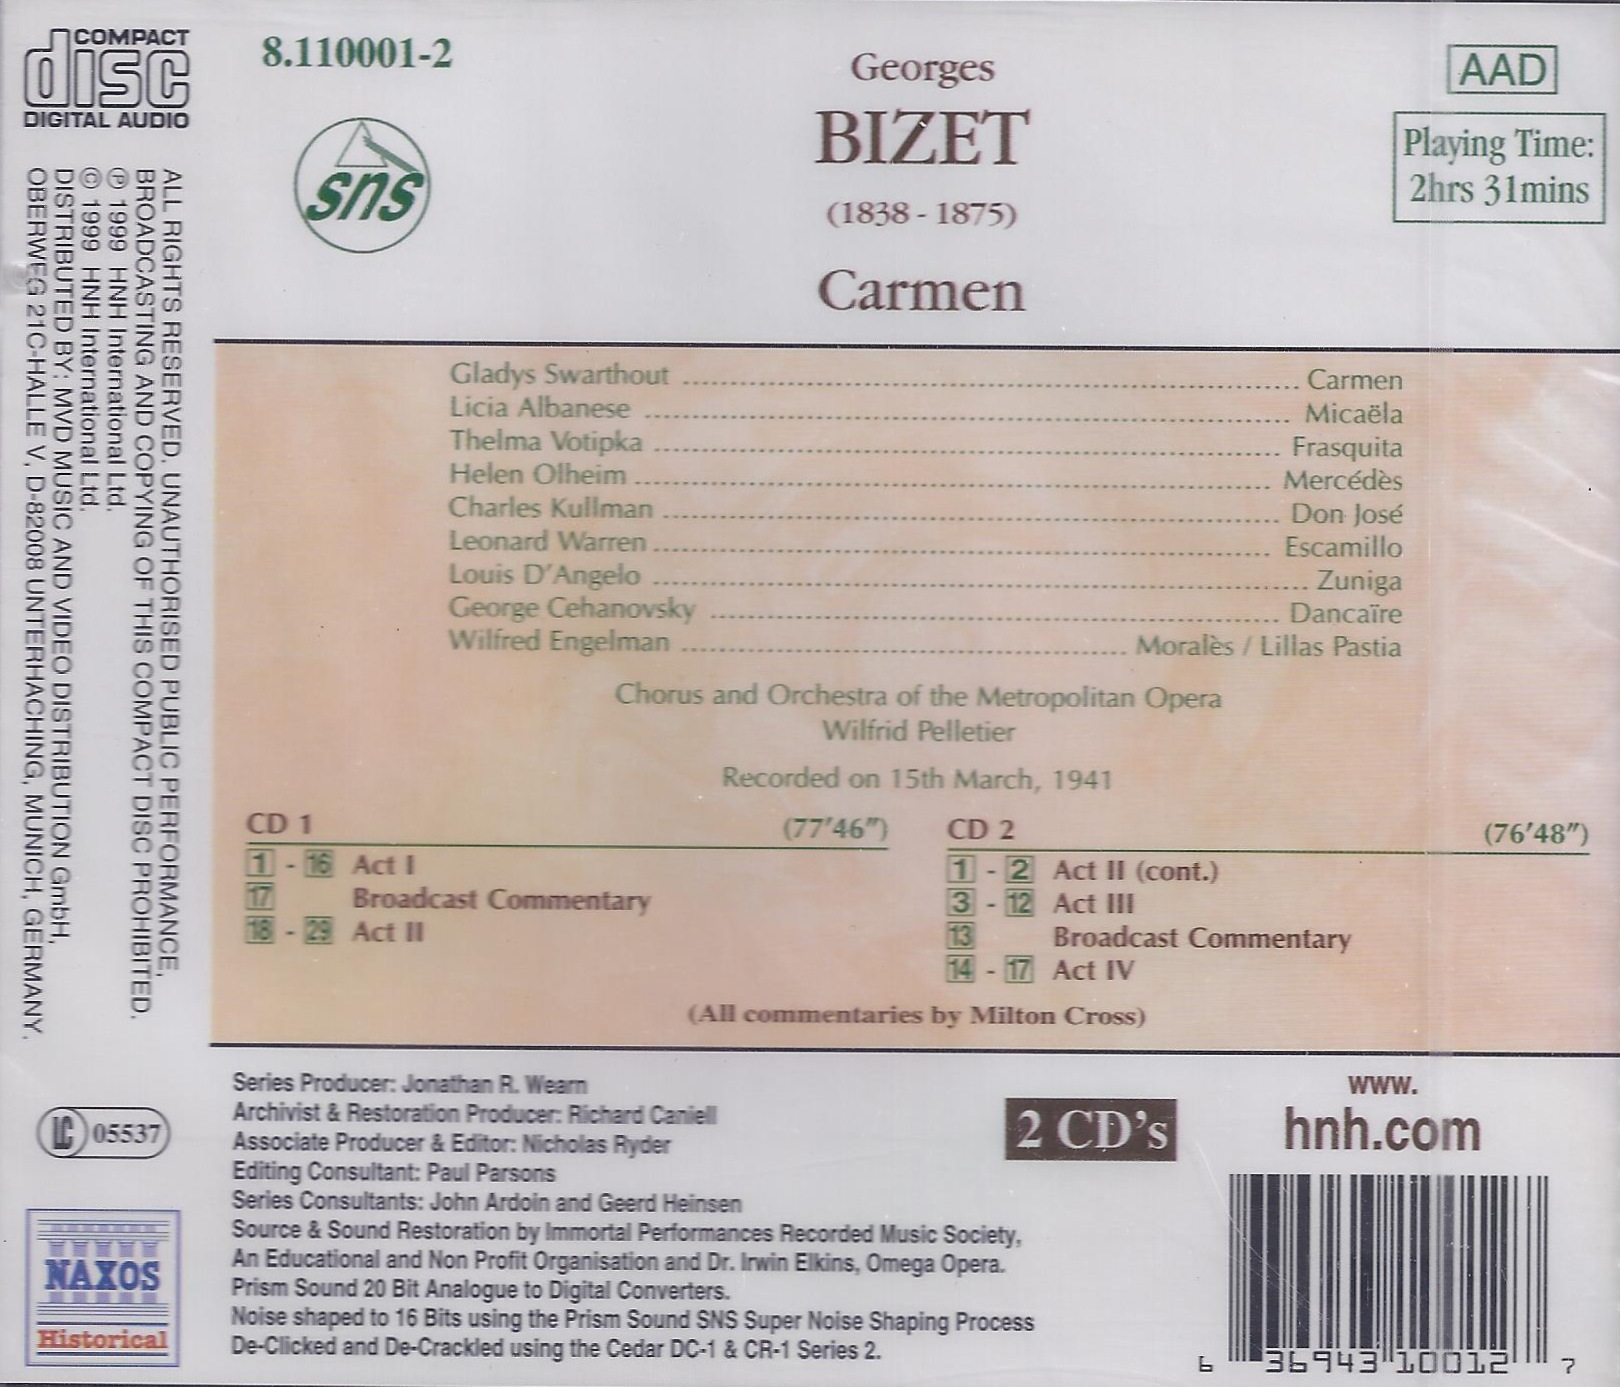 BIZET: Carmen - slide-1